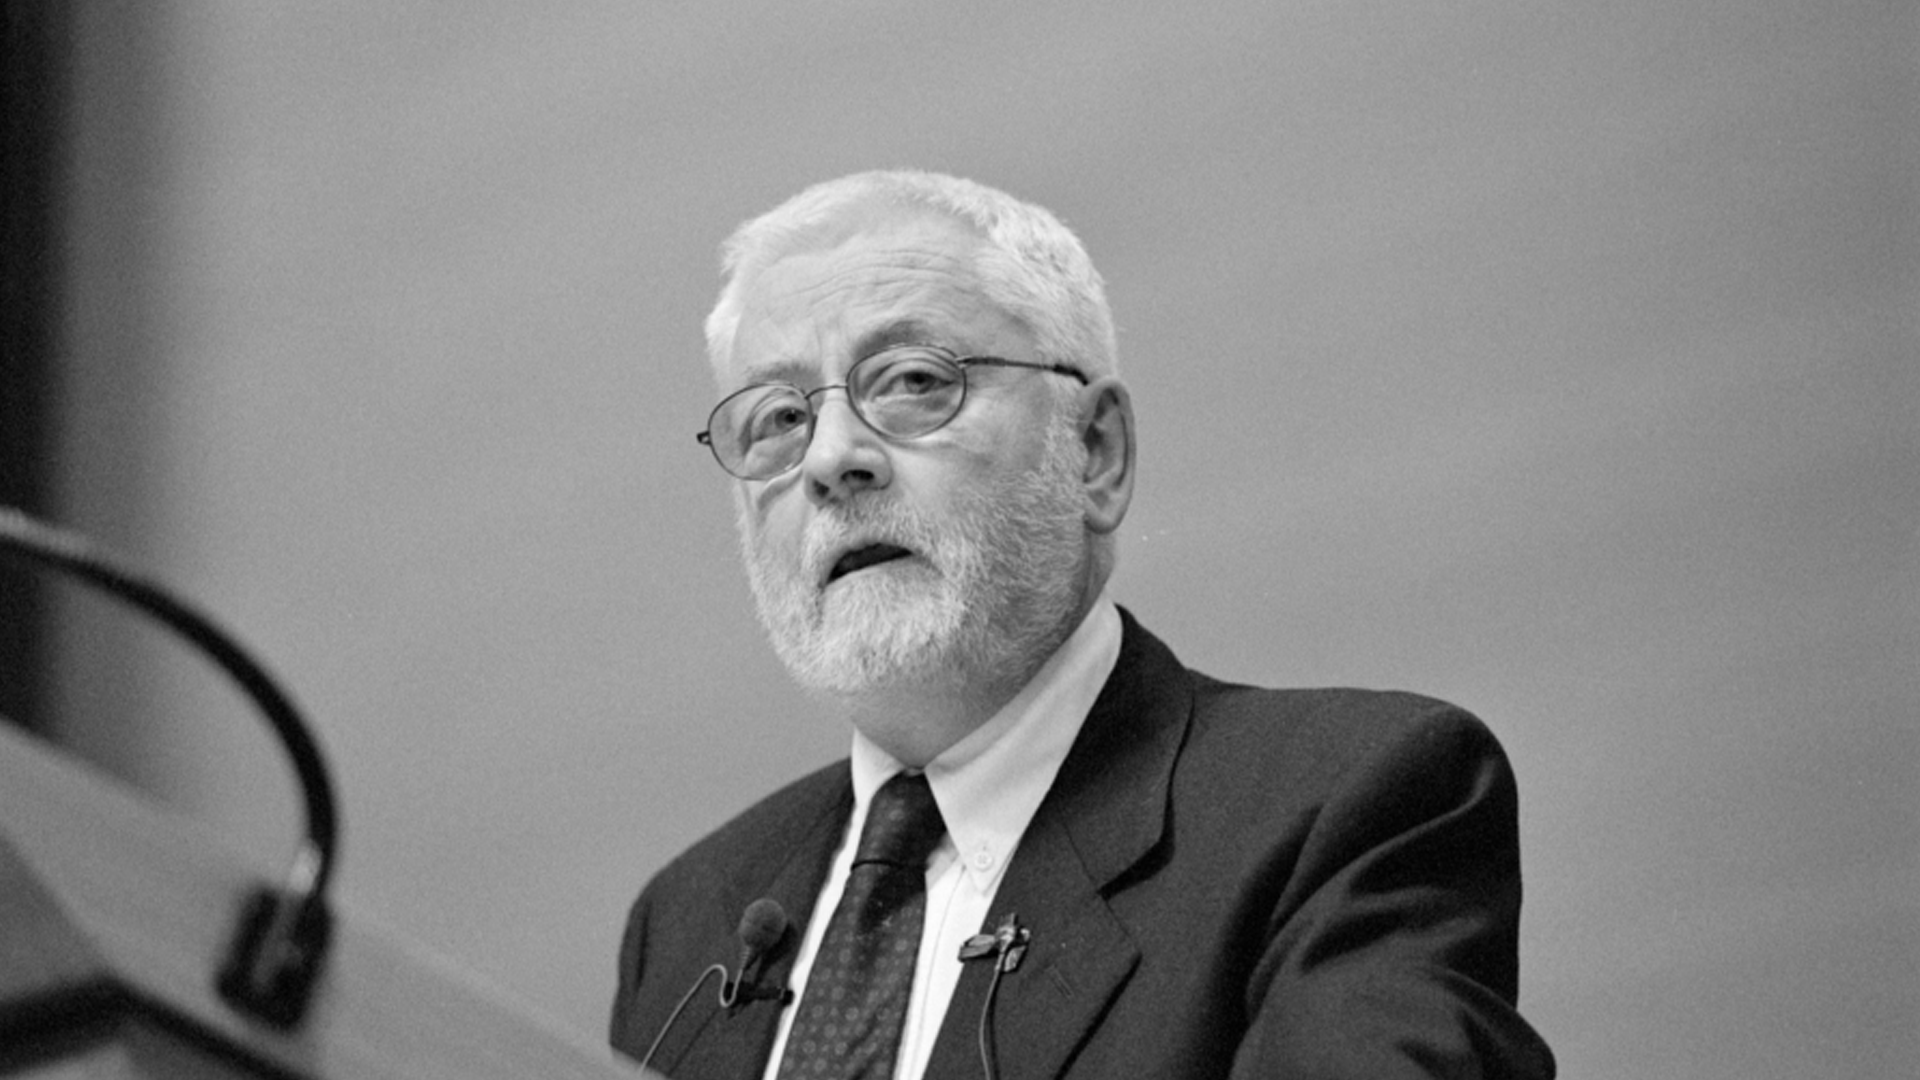 Prof. Daniel Roche